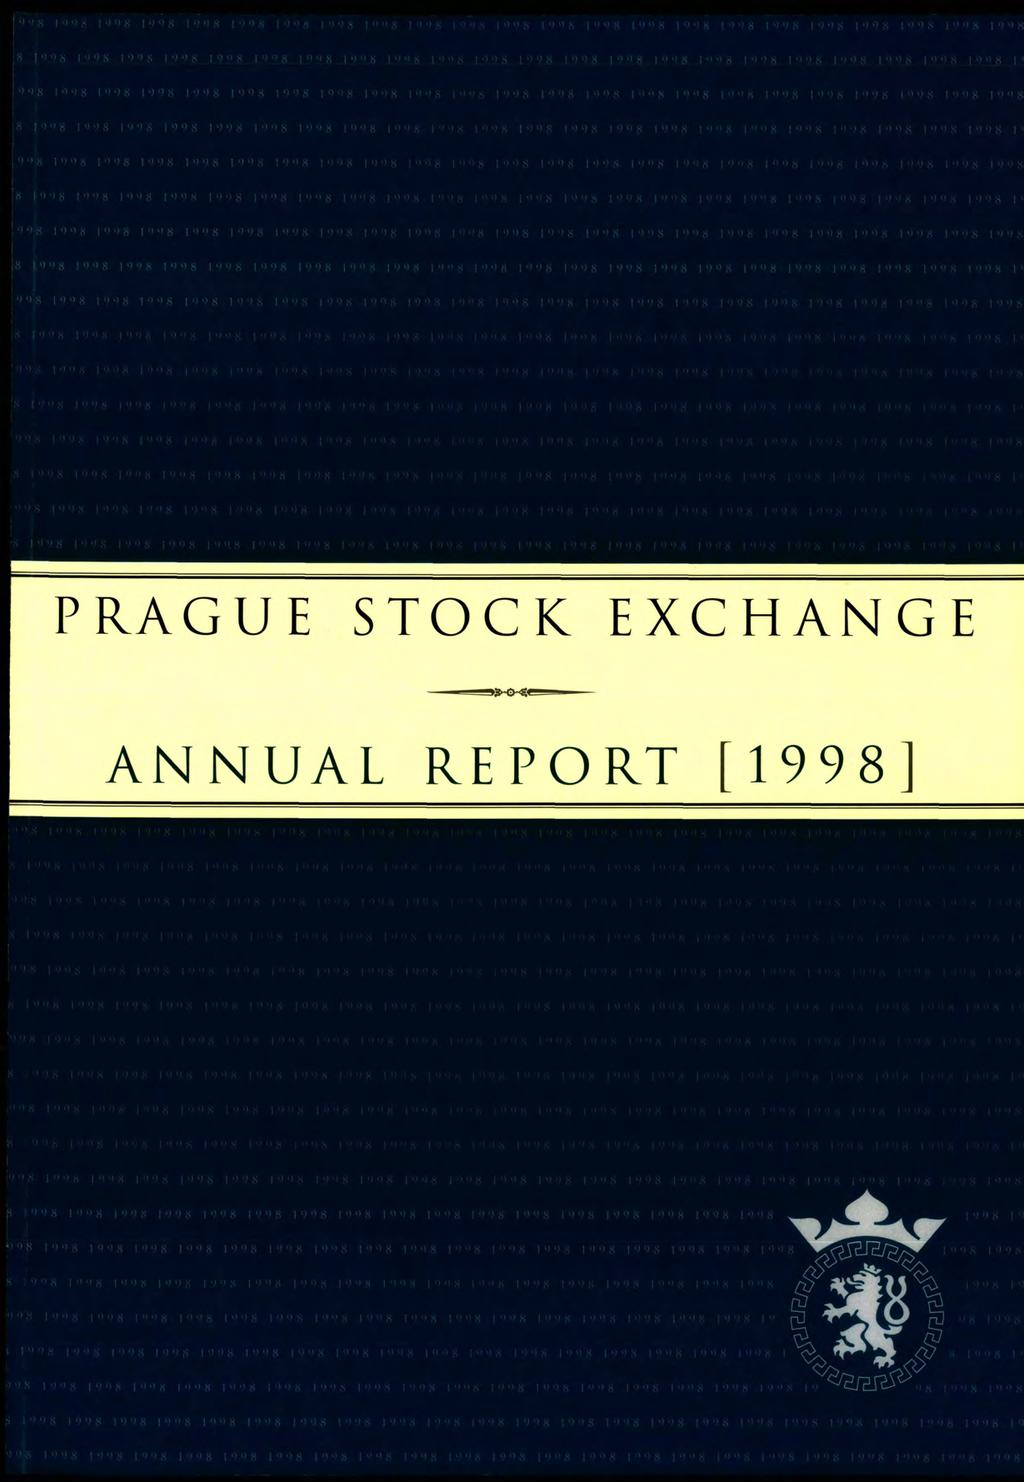 PRAGUE STOCK